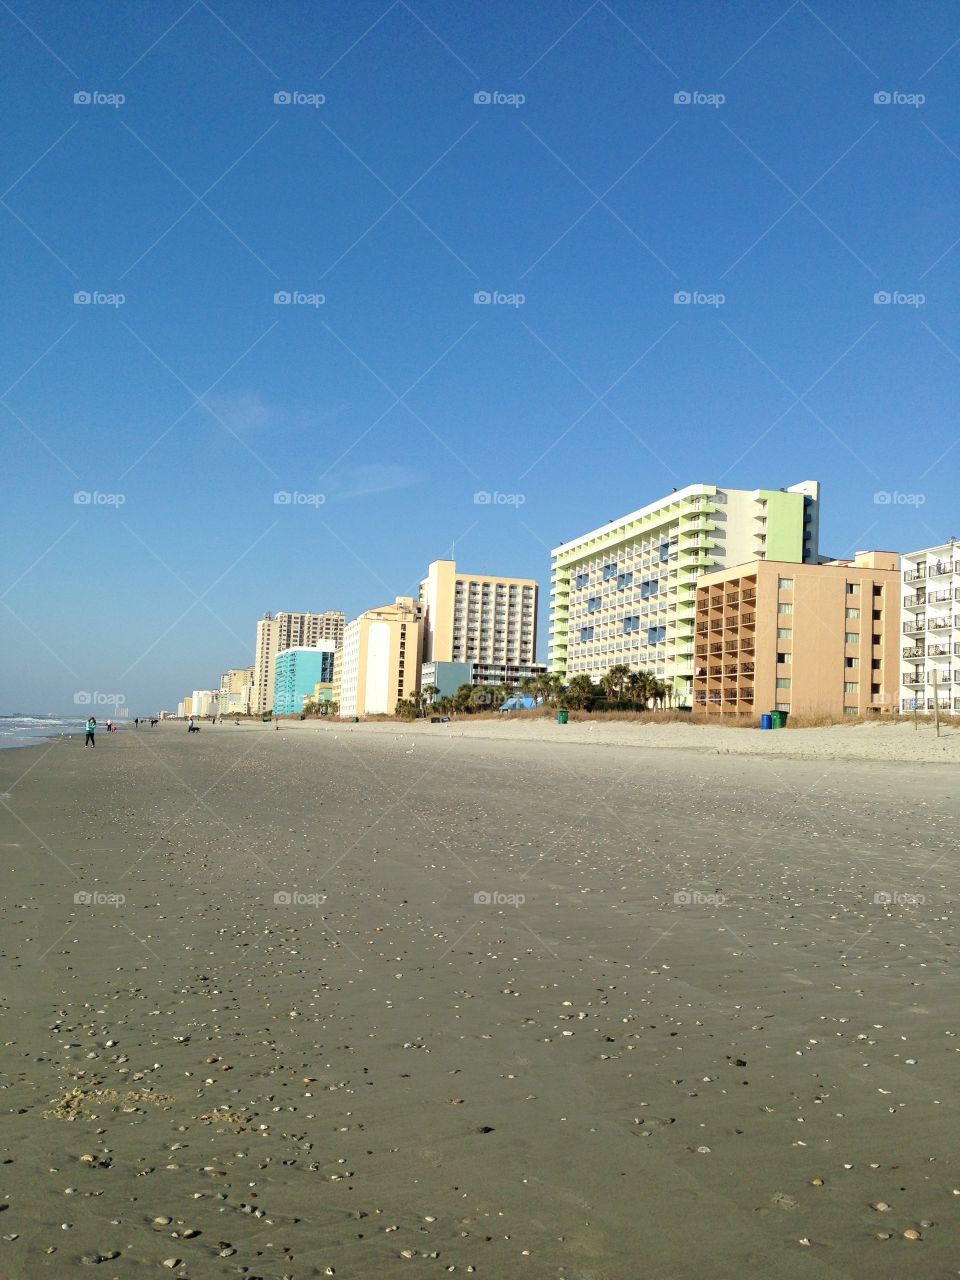 Beachfront hotels